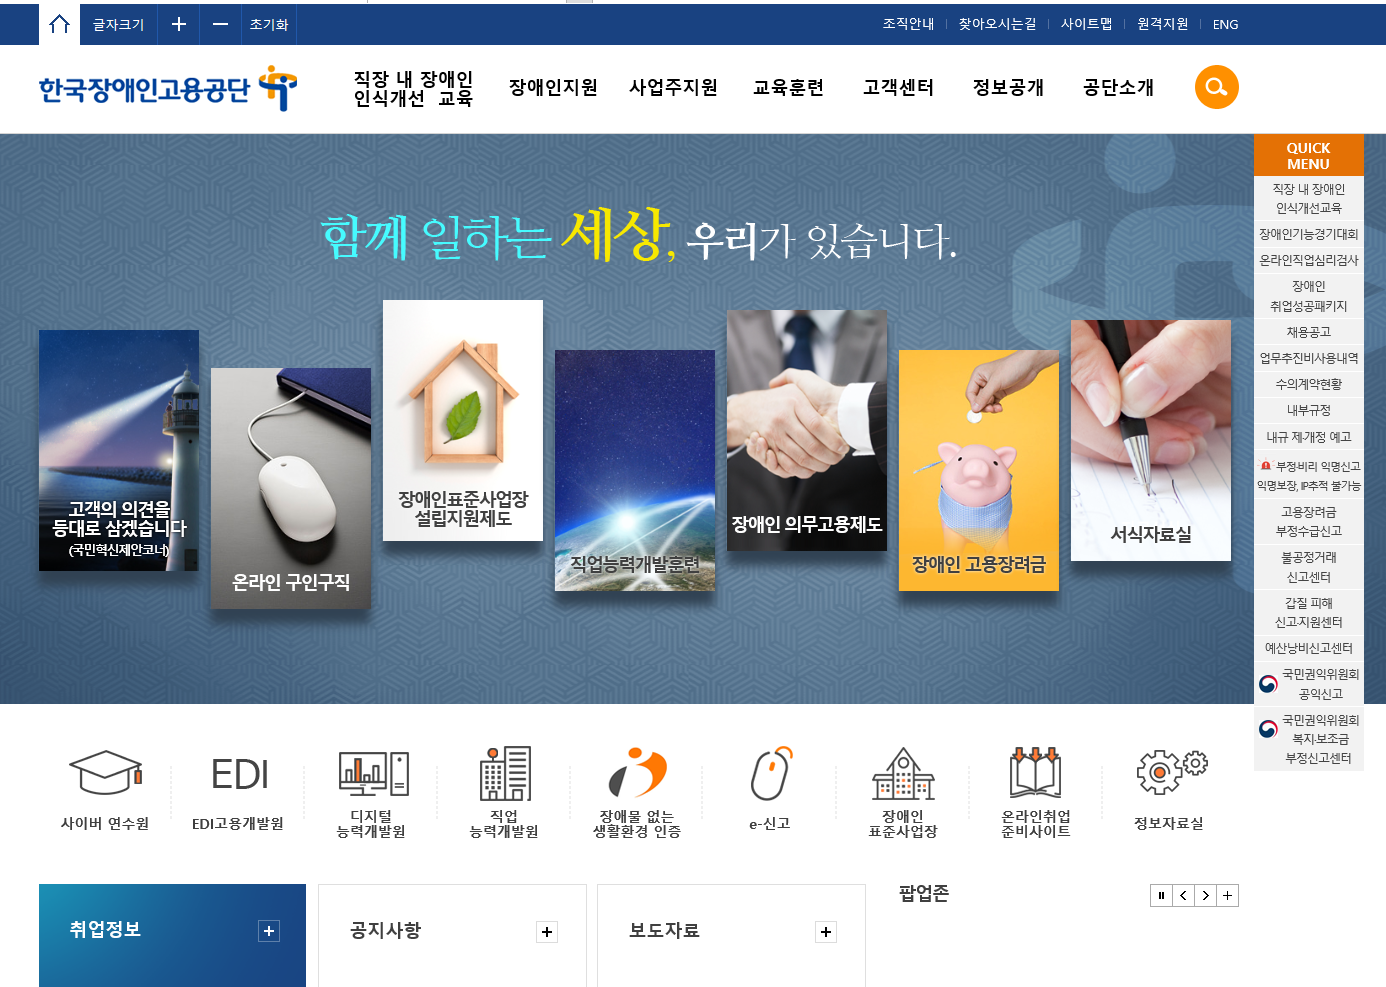 한국장애인고용공단 대표 홈페이지 스크릿샷